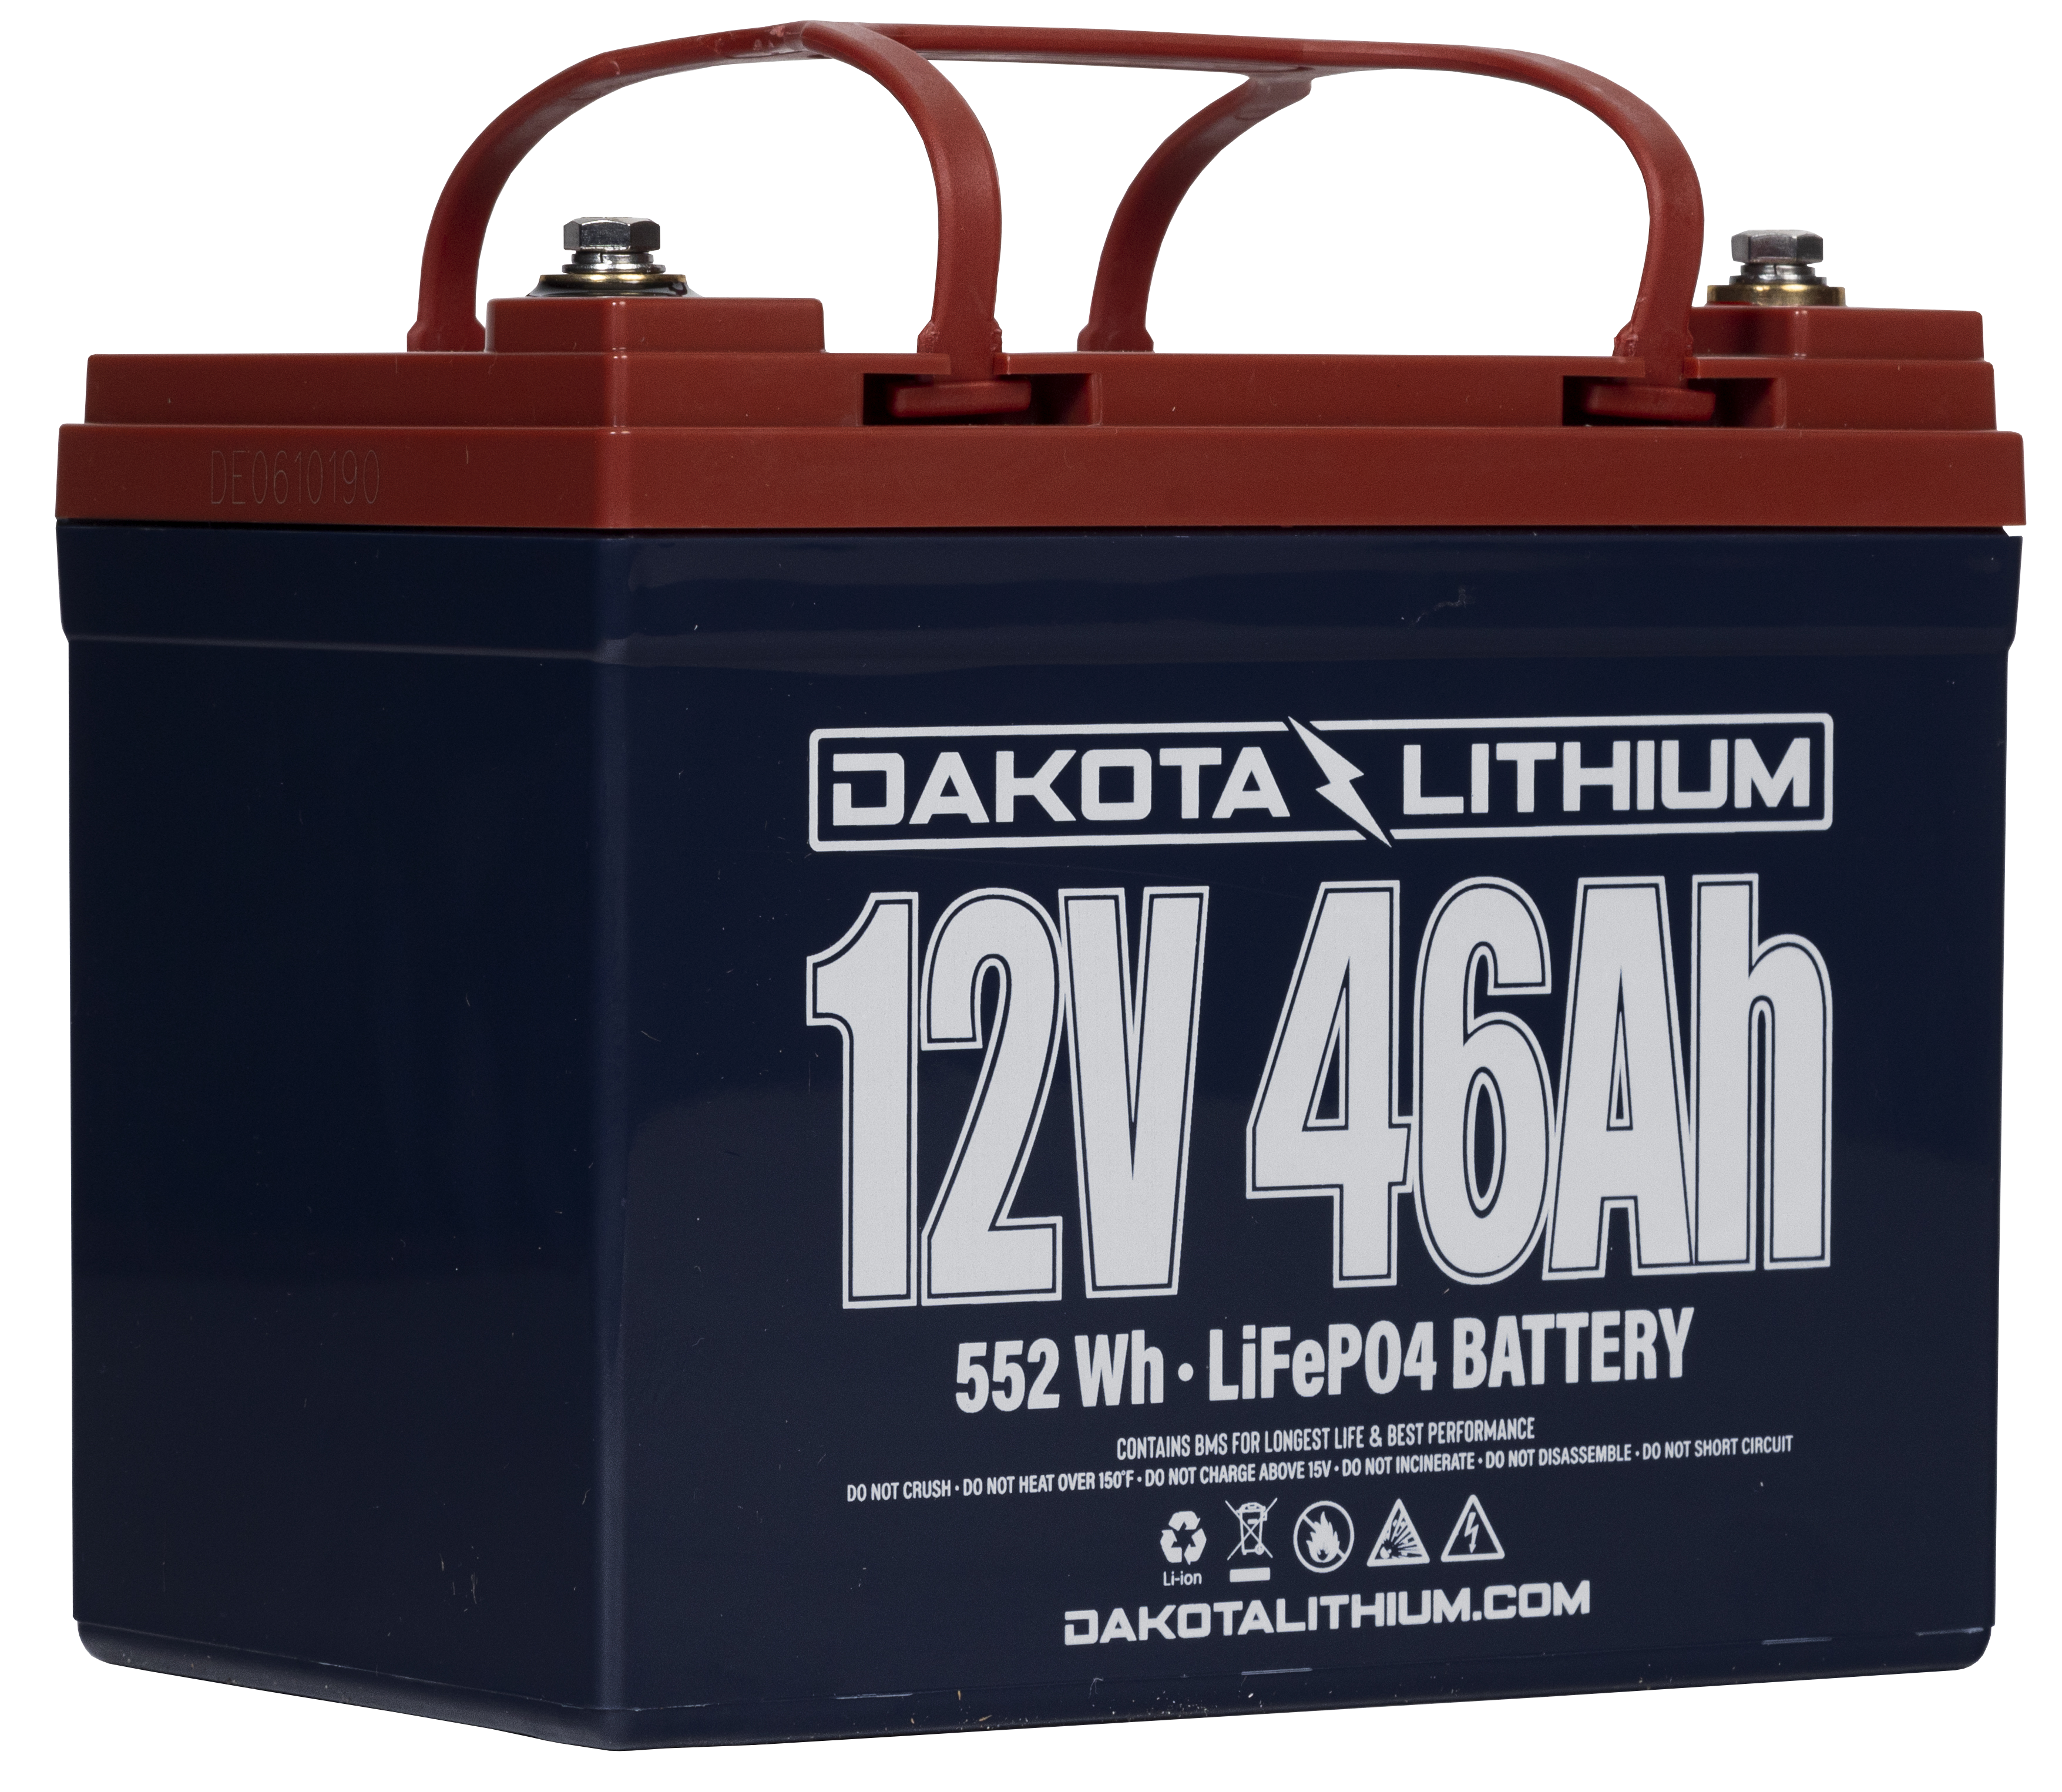 Dakota Lithium 12V 46Ah U1 LiFePo4 Battery